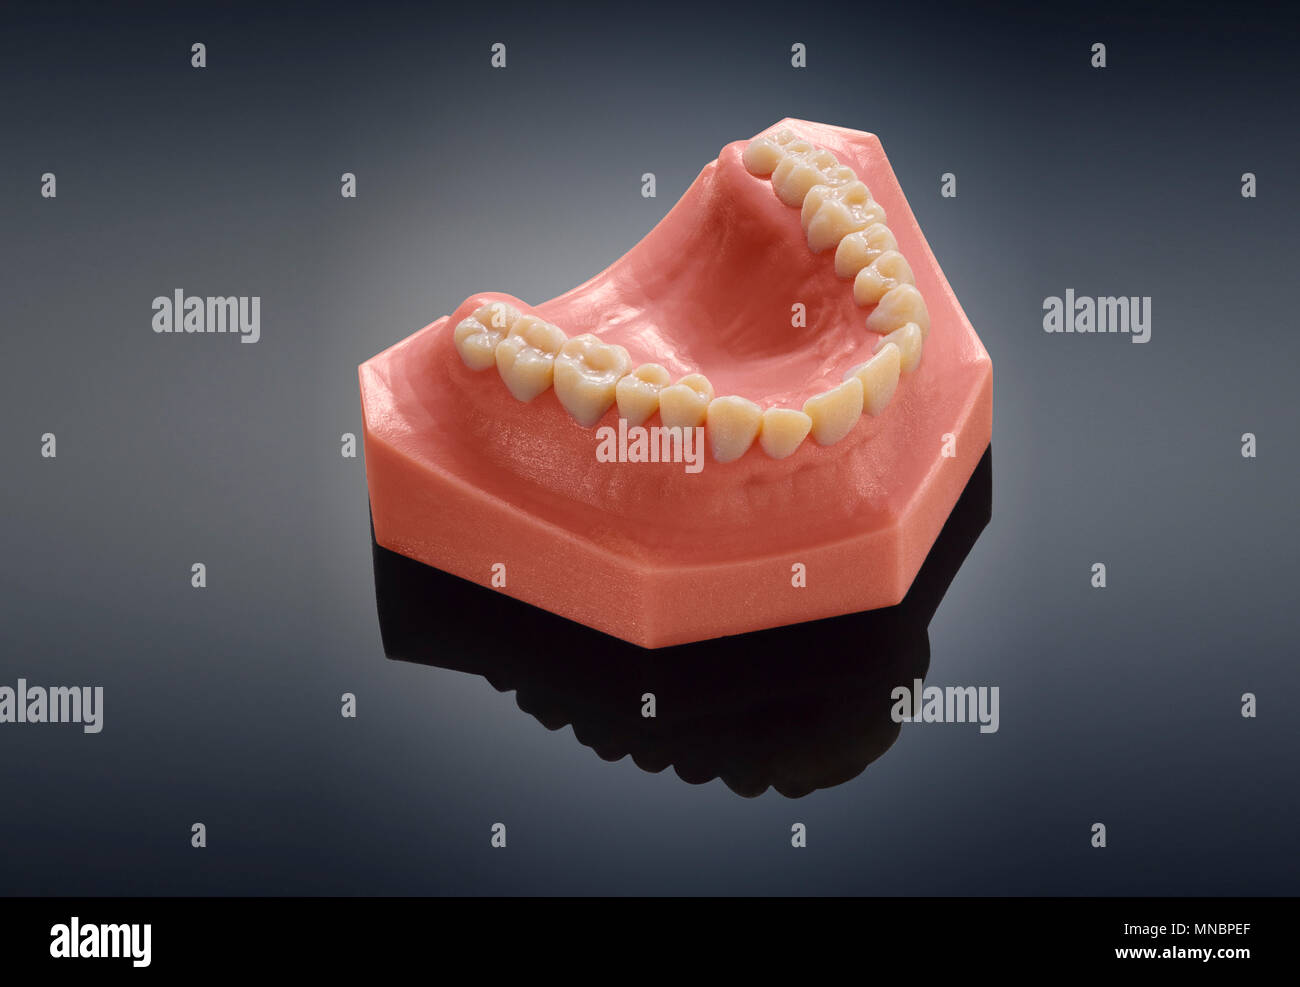 3d teeth immagini e fotografie stock ad alta risoluzione - Alamy